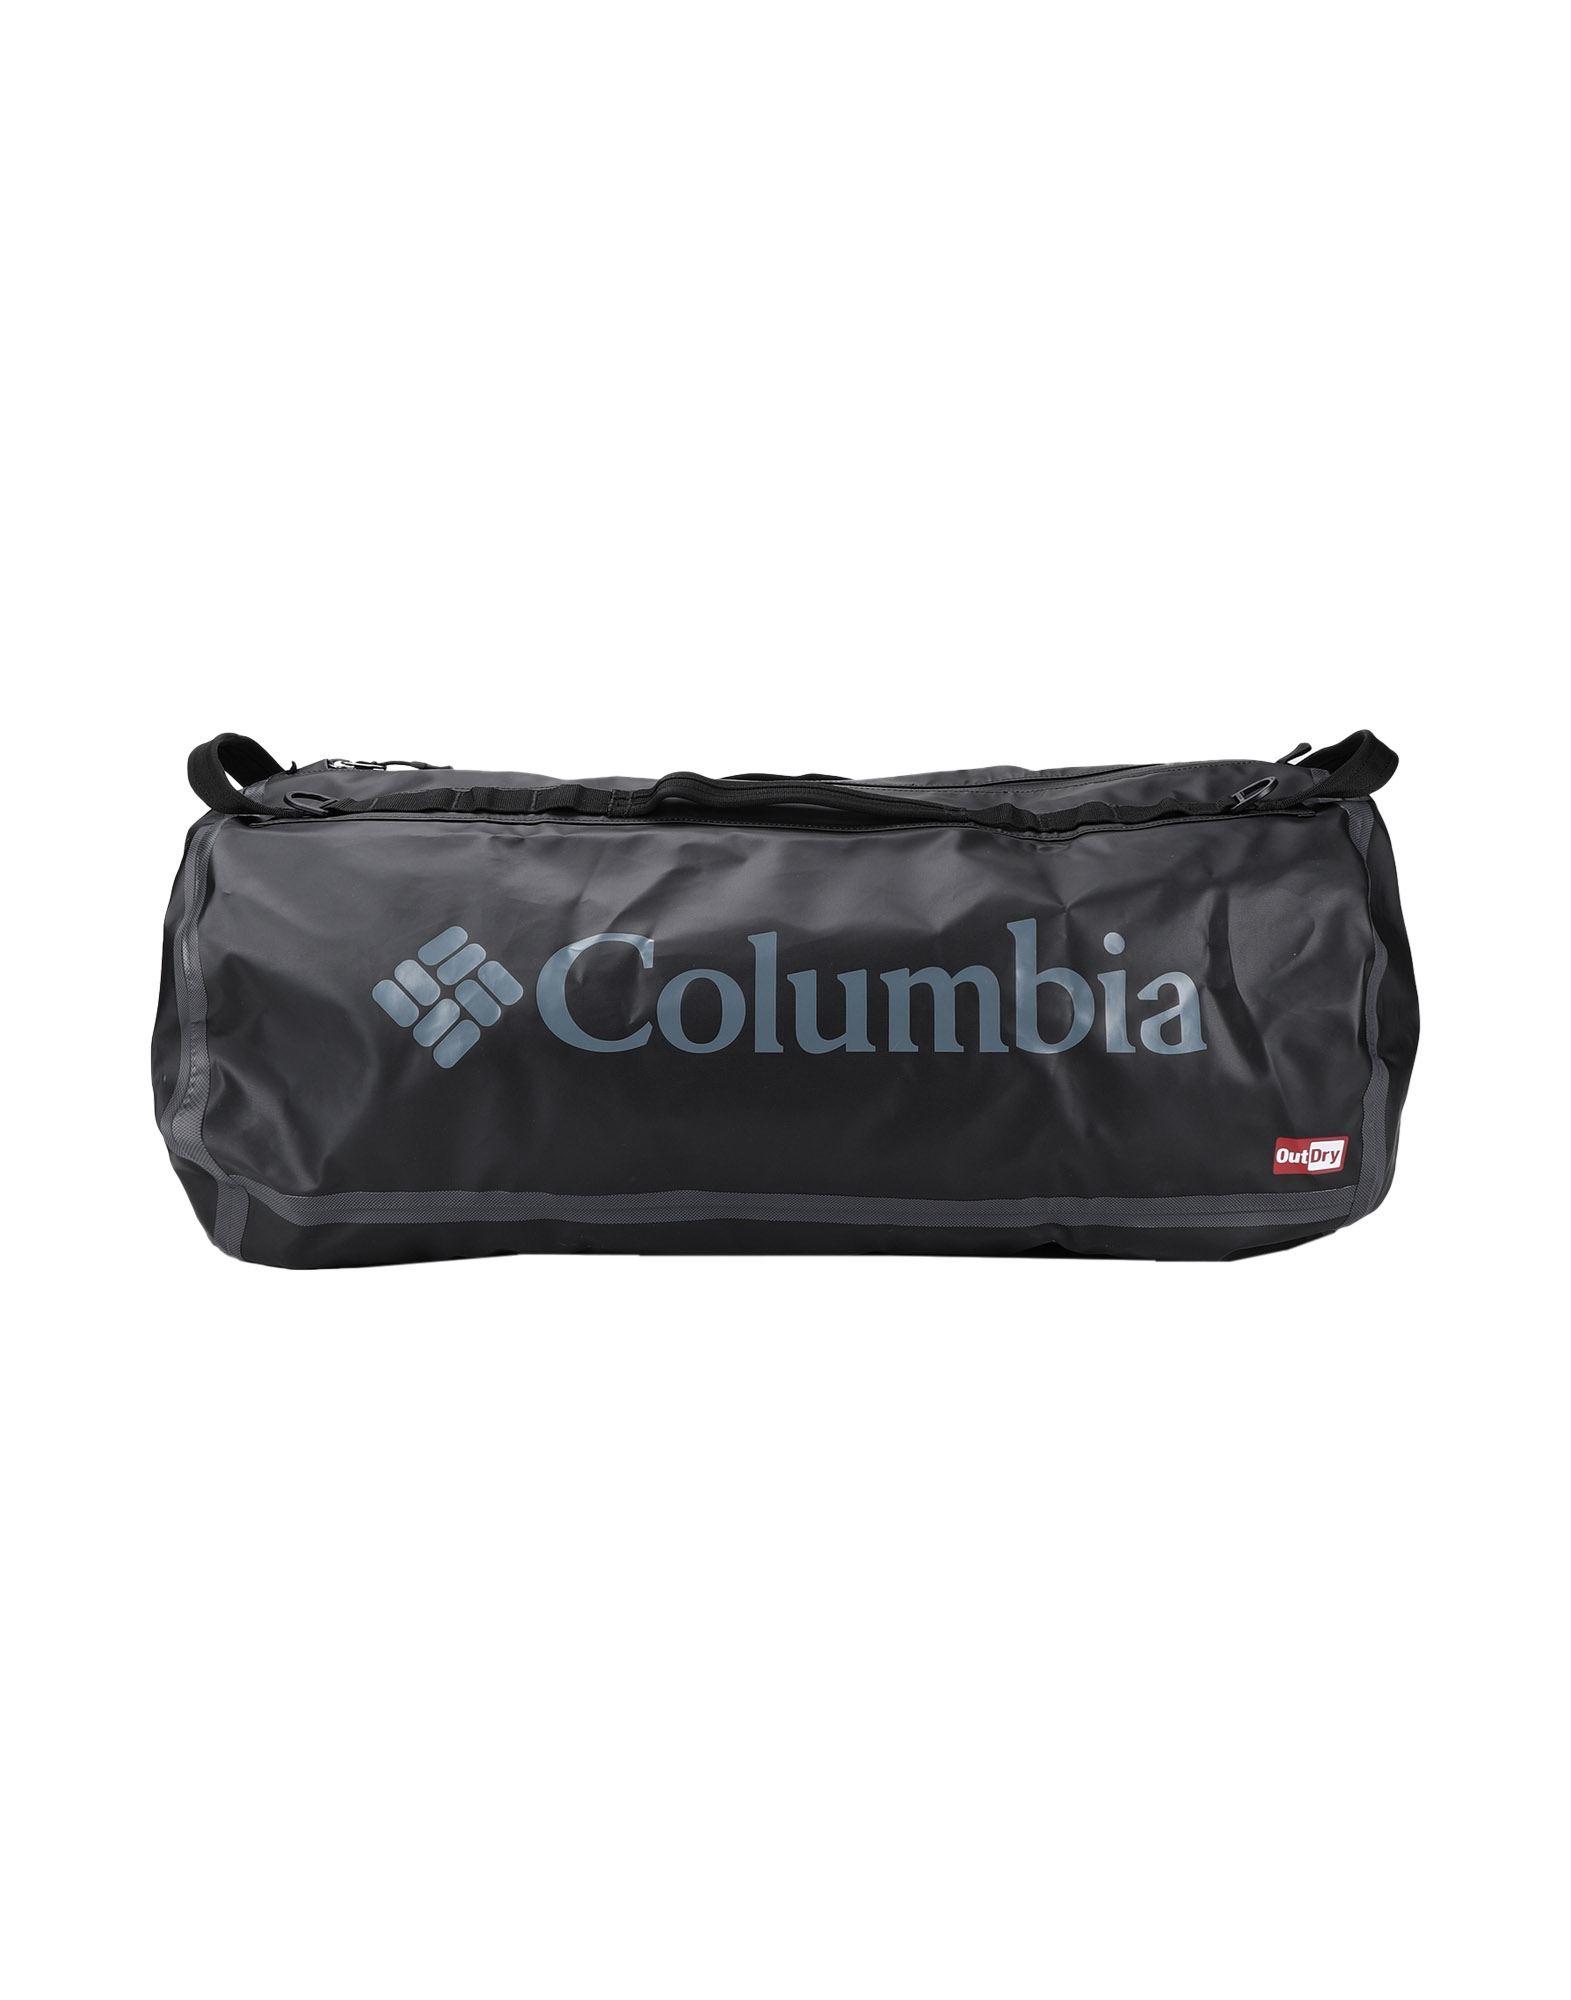 COLUMBIA コロンビア メンズ 旅行バッグ OutDry Ex 80L Duffle ブラック